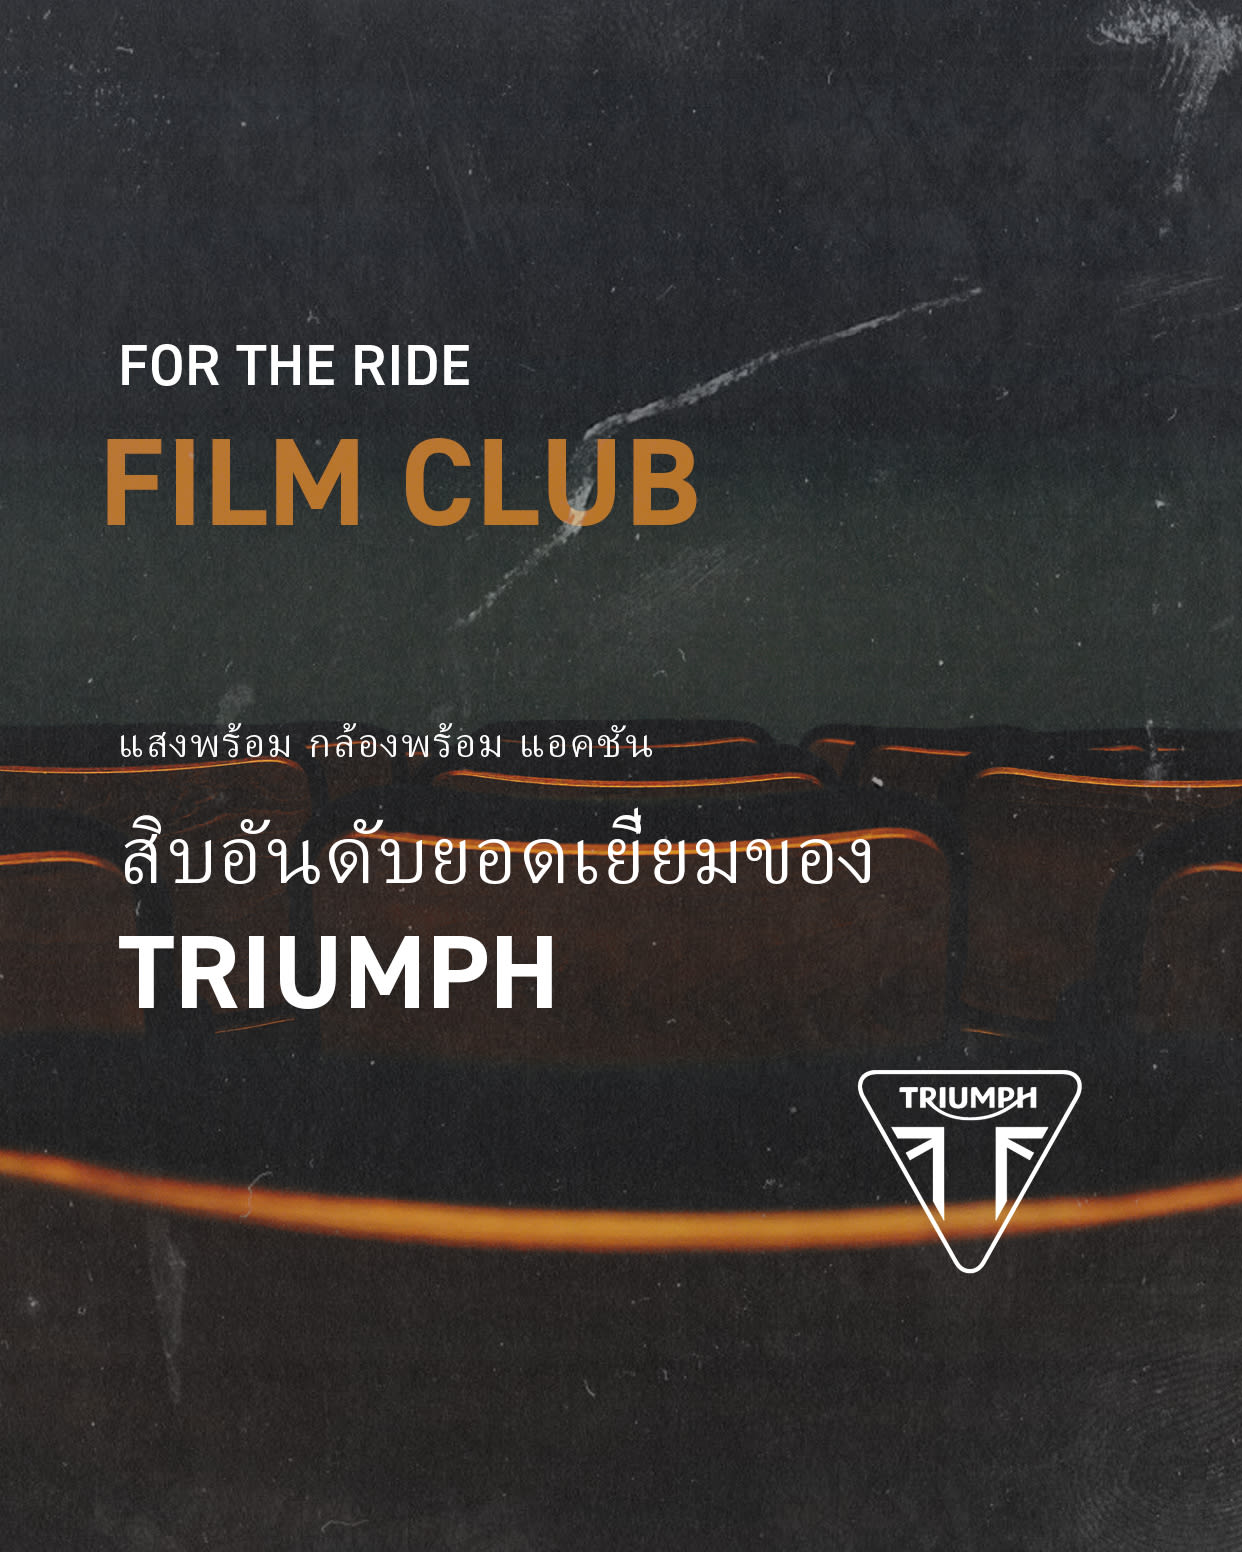 Triumph top 10 film appearances